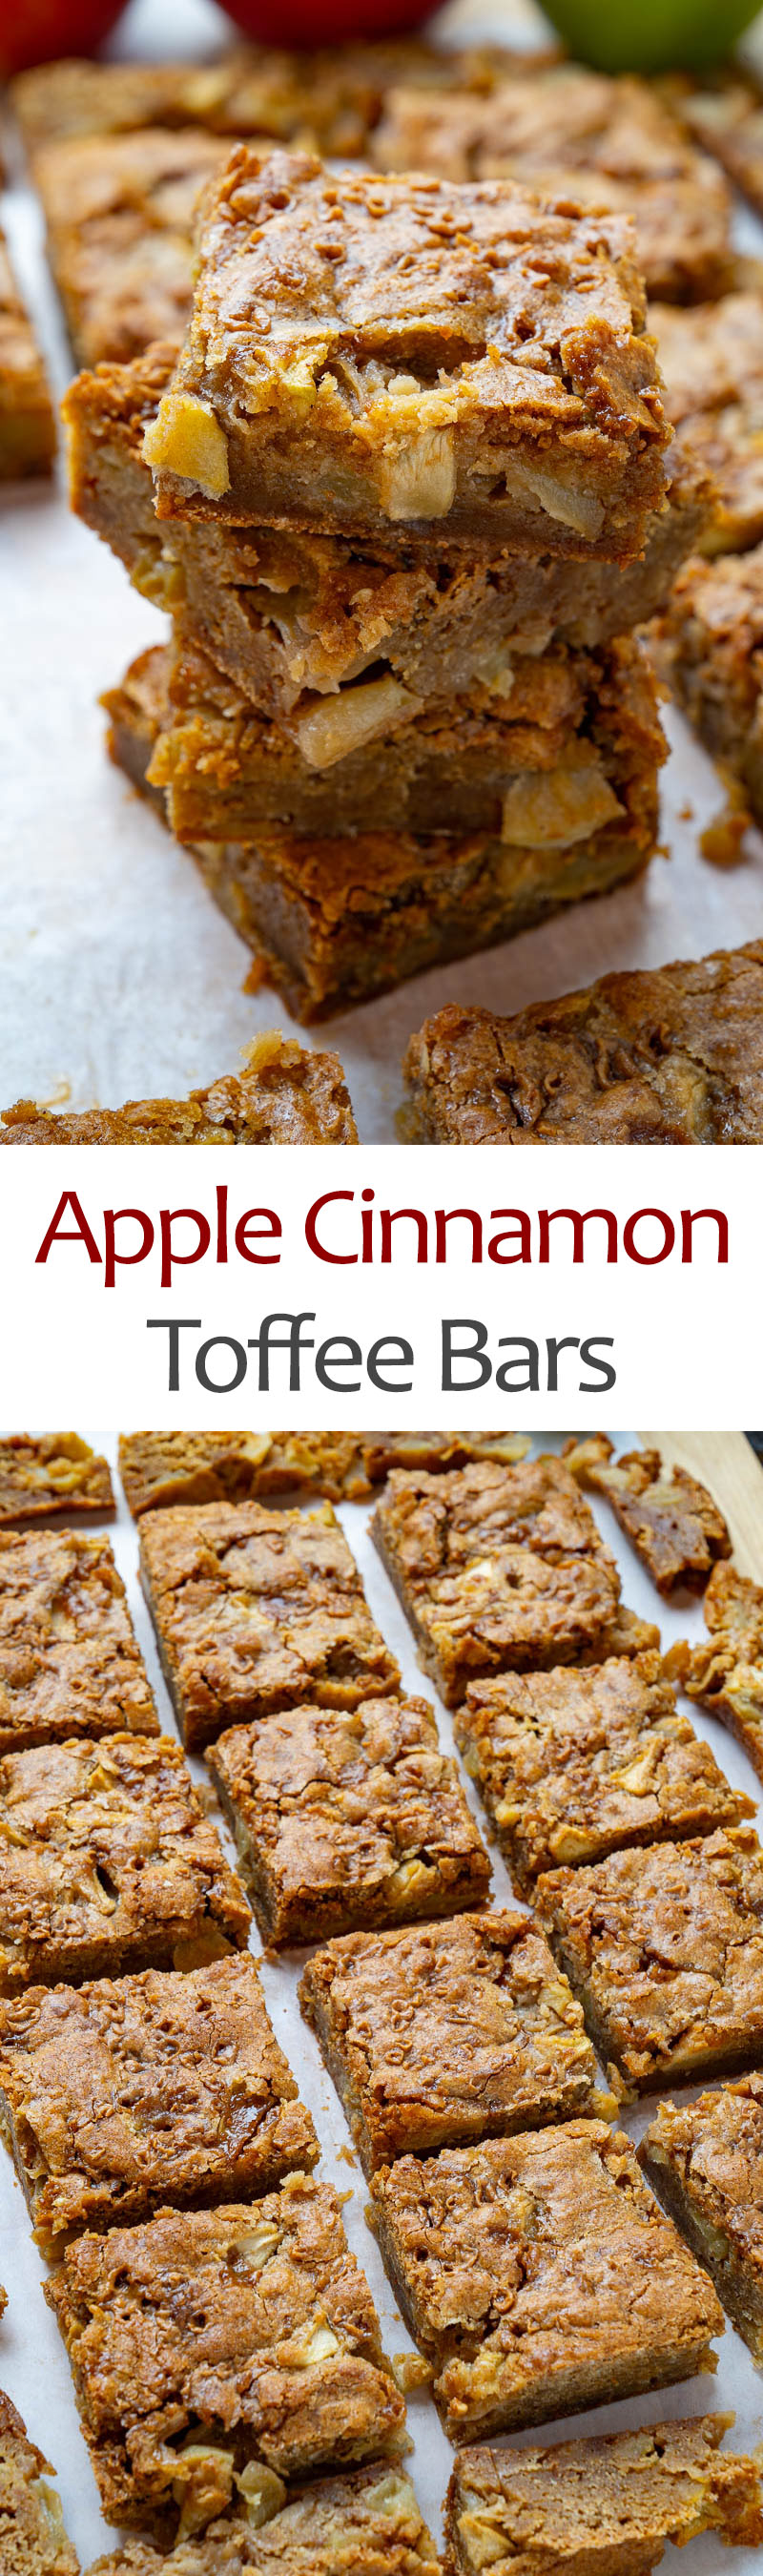 Apple Cinnamon Toffee Bars